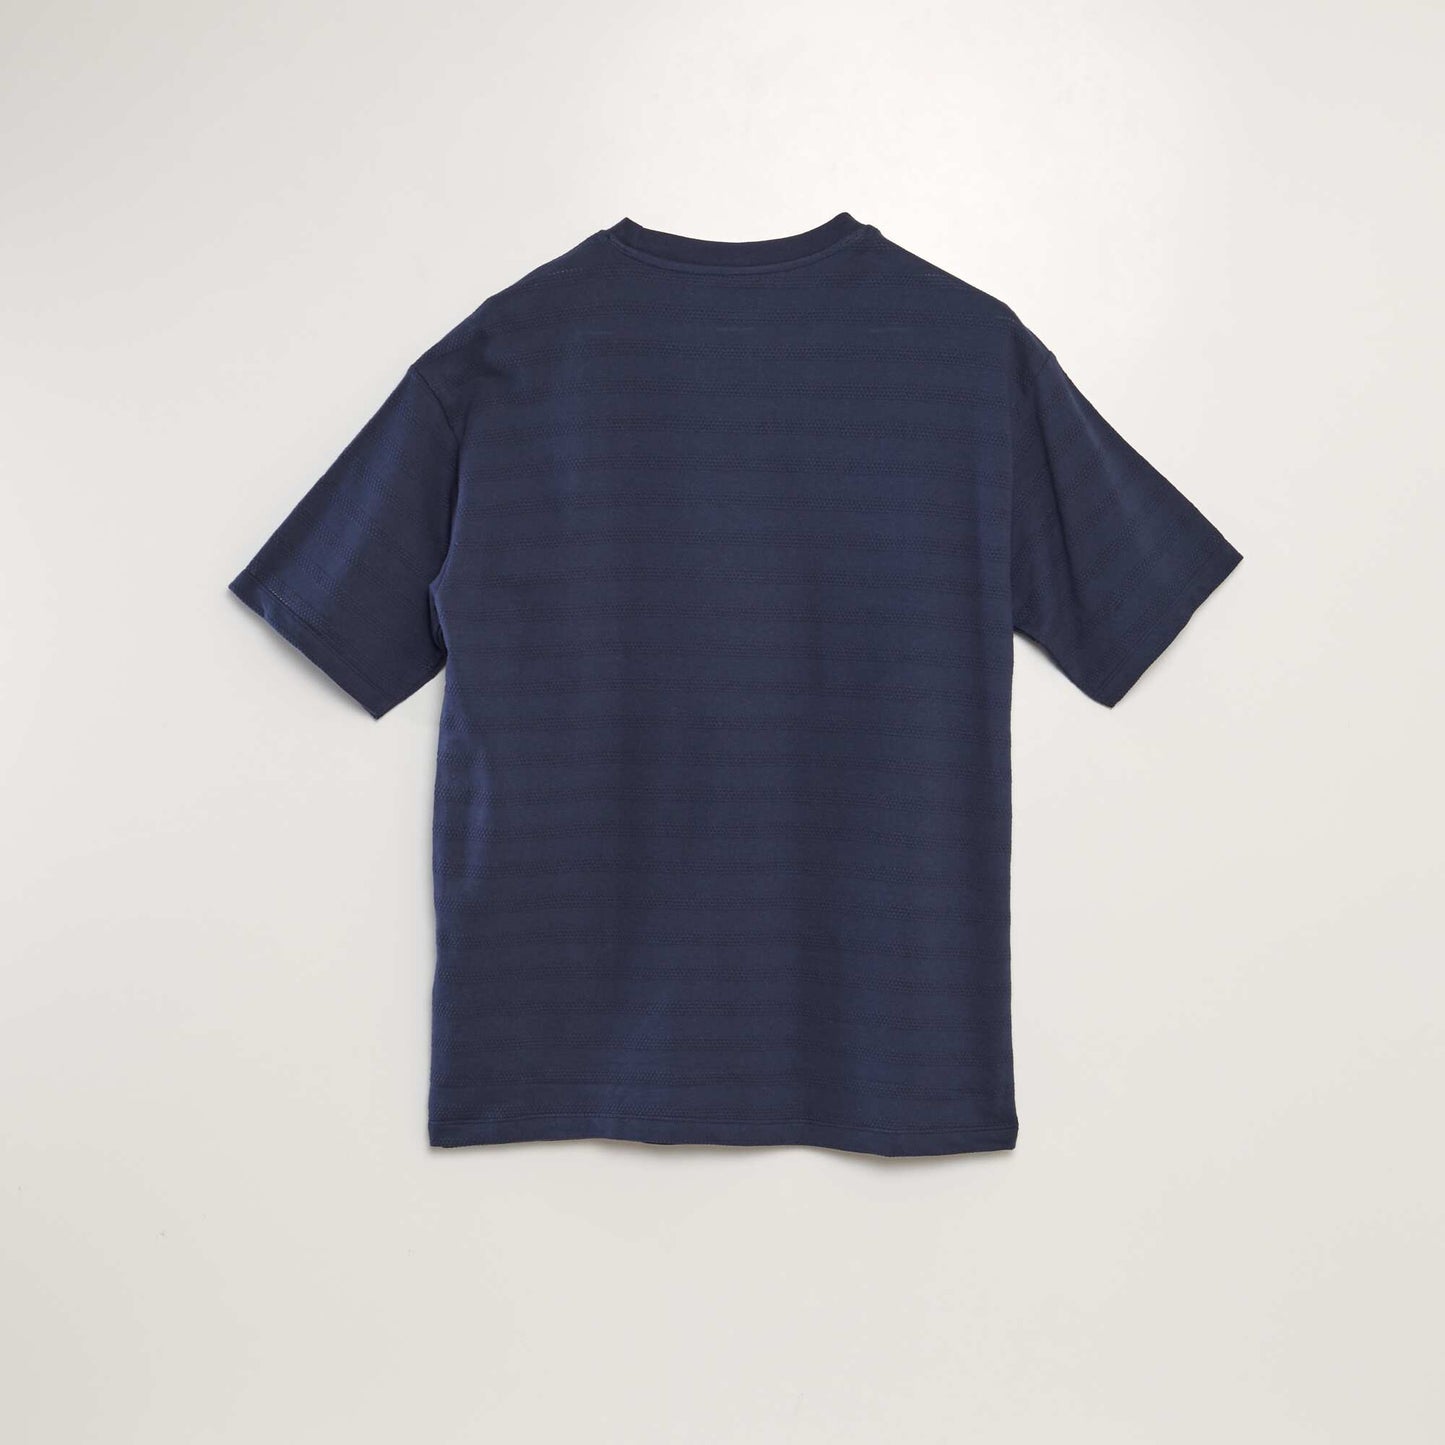 T-shirt en coton texturé Bleu nuit